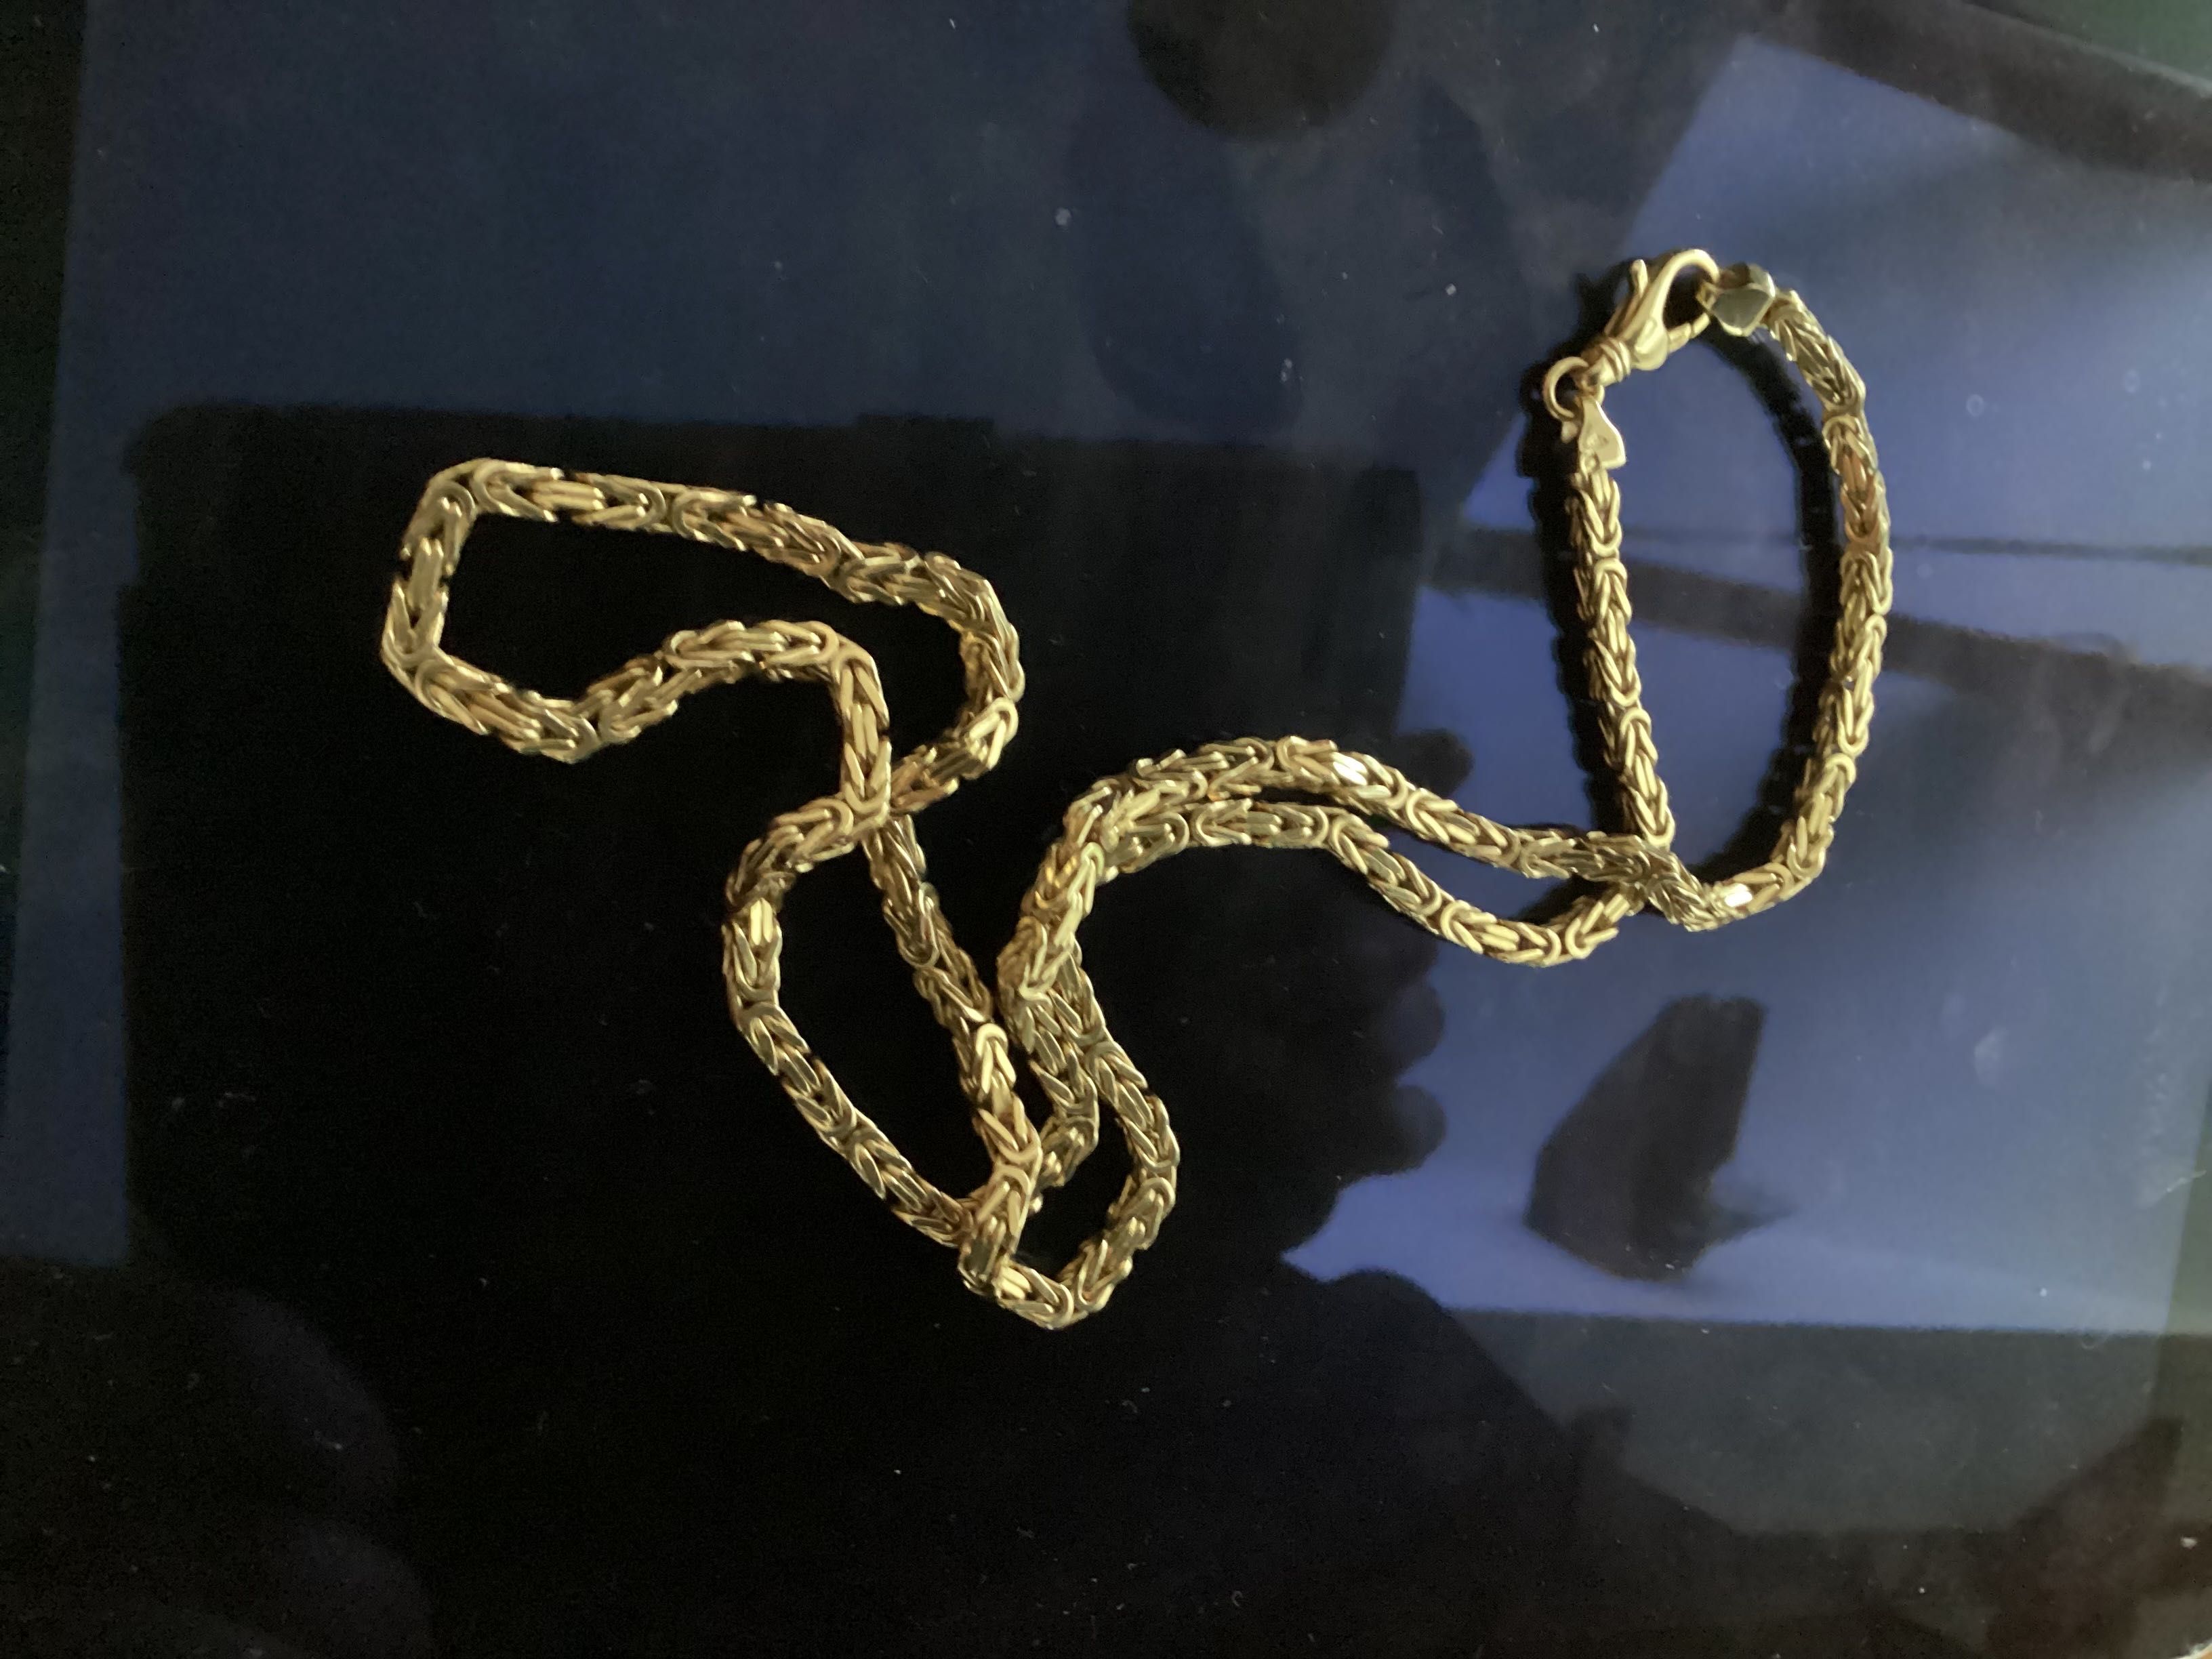 Złoty łańcuszek splot Królewski 200 zł za gram-waga 43 g/długość 55 cm